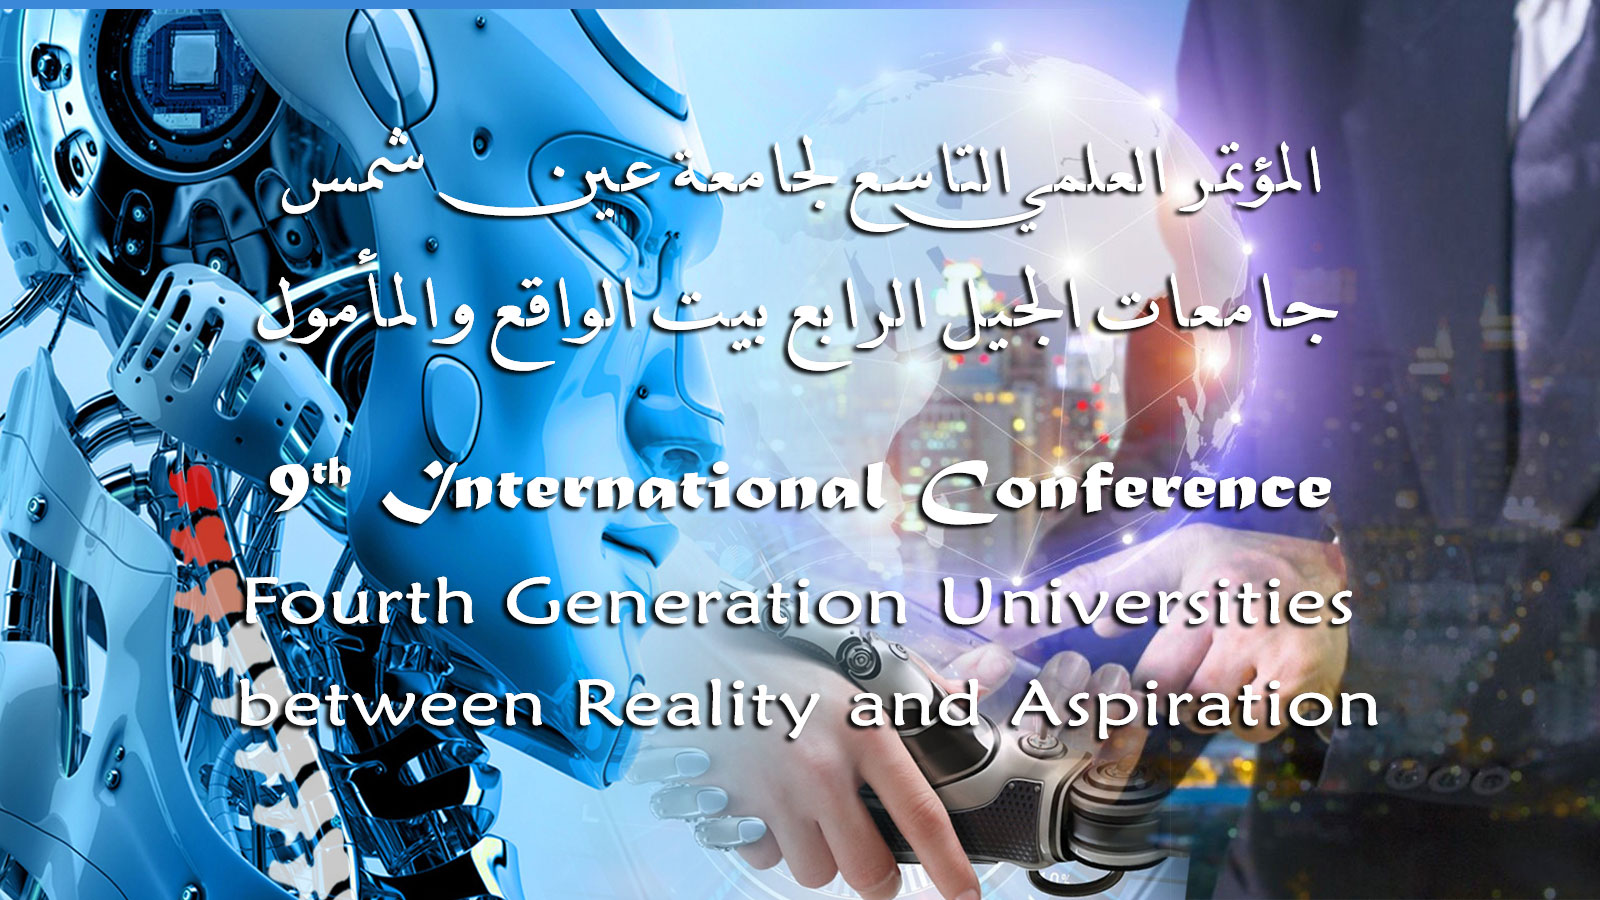 جامعة عين شمس تستعد لعقد المؤتمر العلمي التاسع "الجيل الرابع من الجامعات بين الواقع والمأمول"